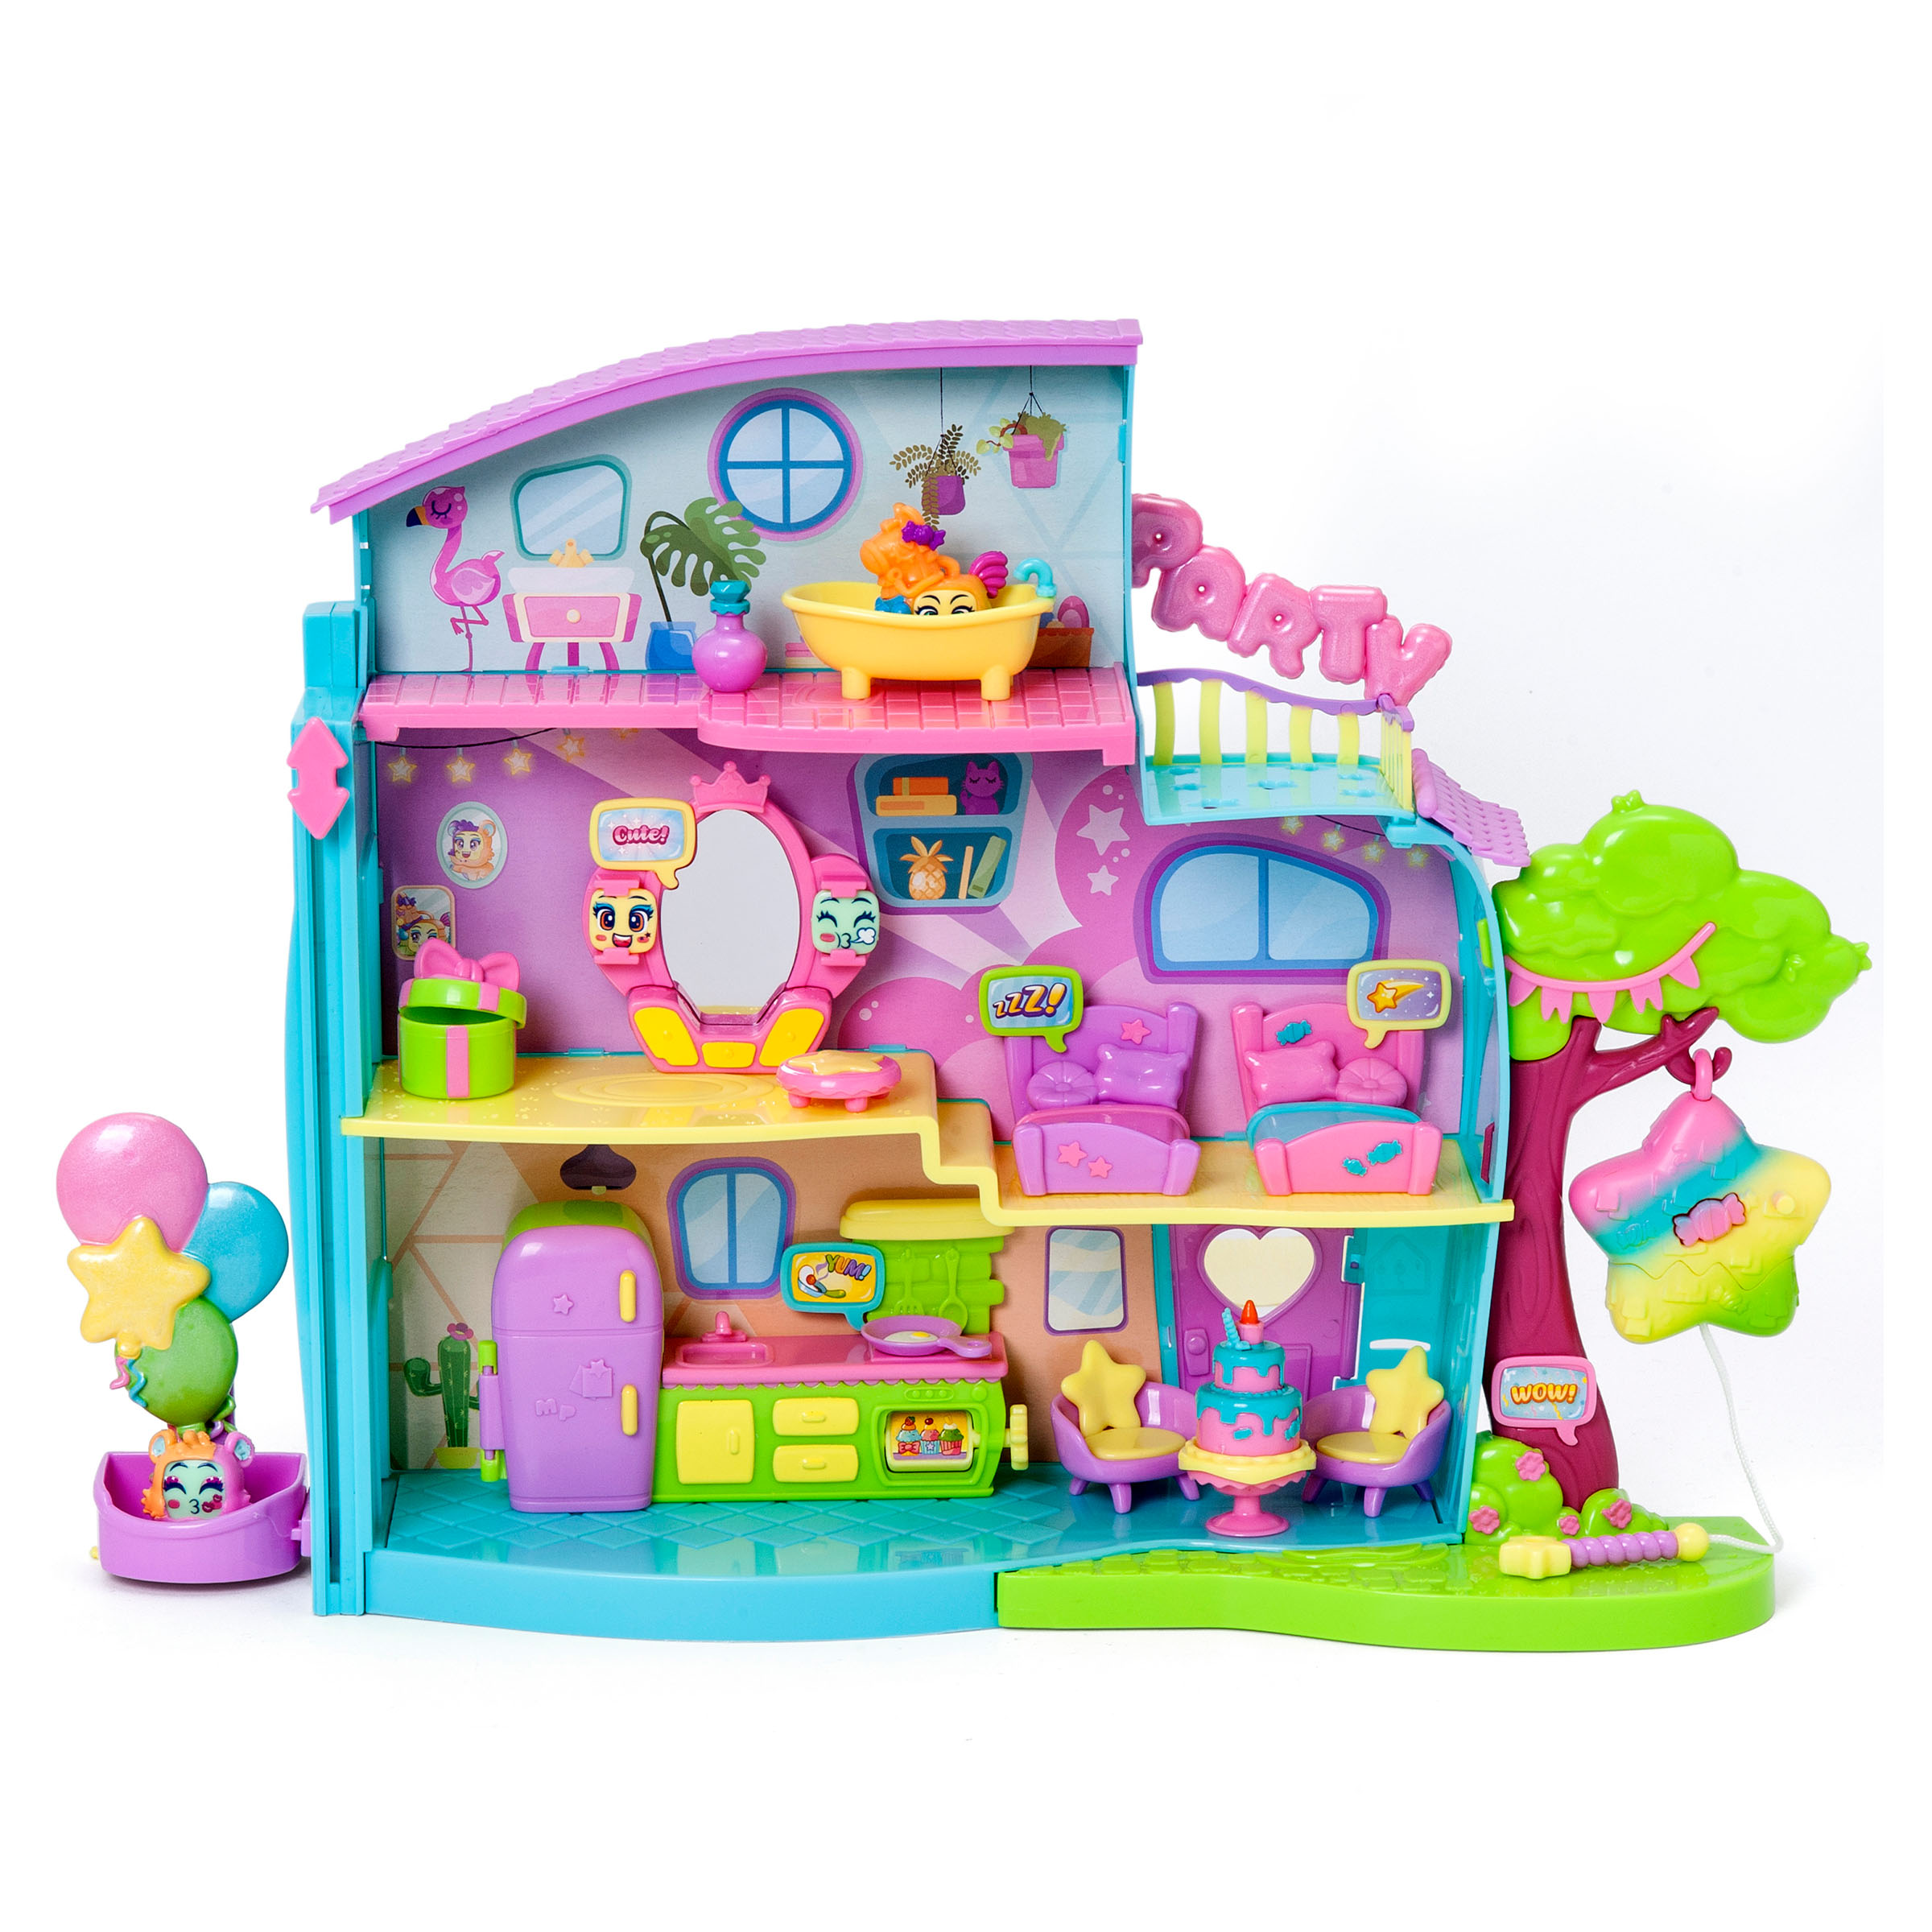 Sentosphere - Szminki Gloss Party / ZABAWKI - Mamissima - zabawki,  akcesoria dla dzieci i rodziców.